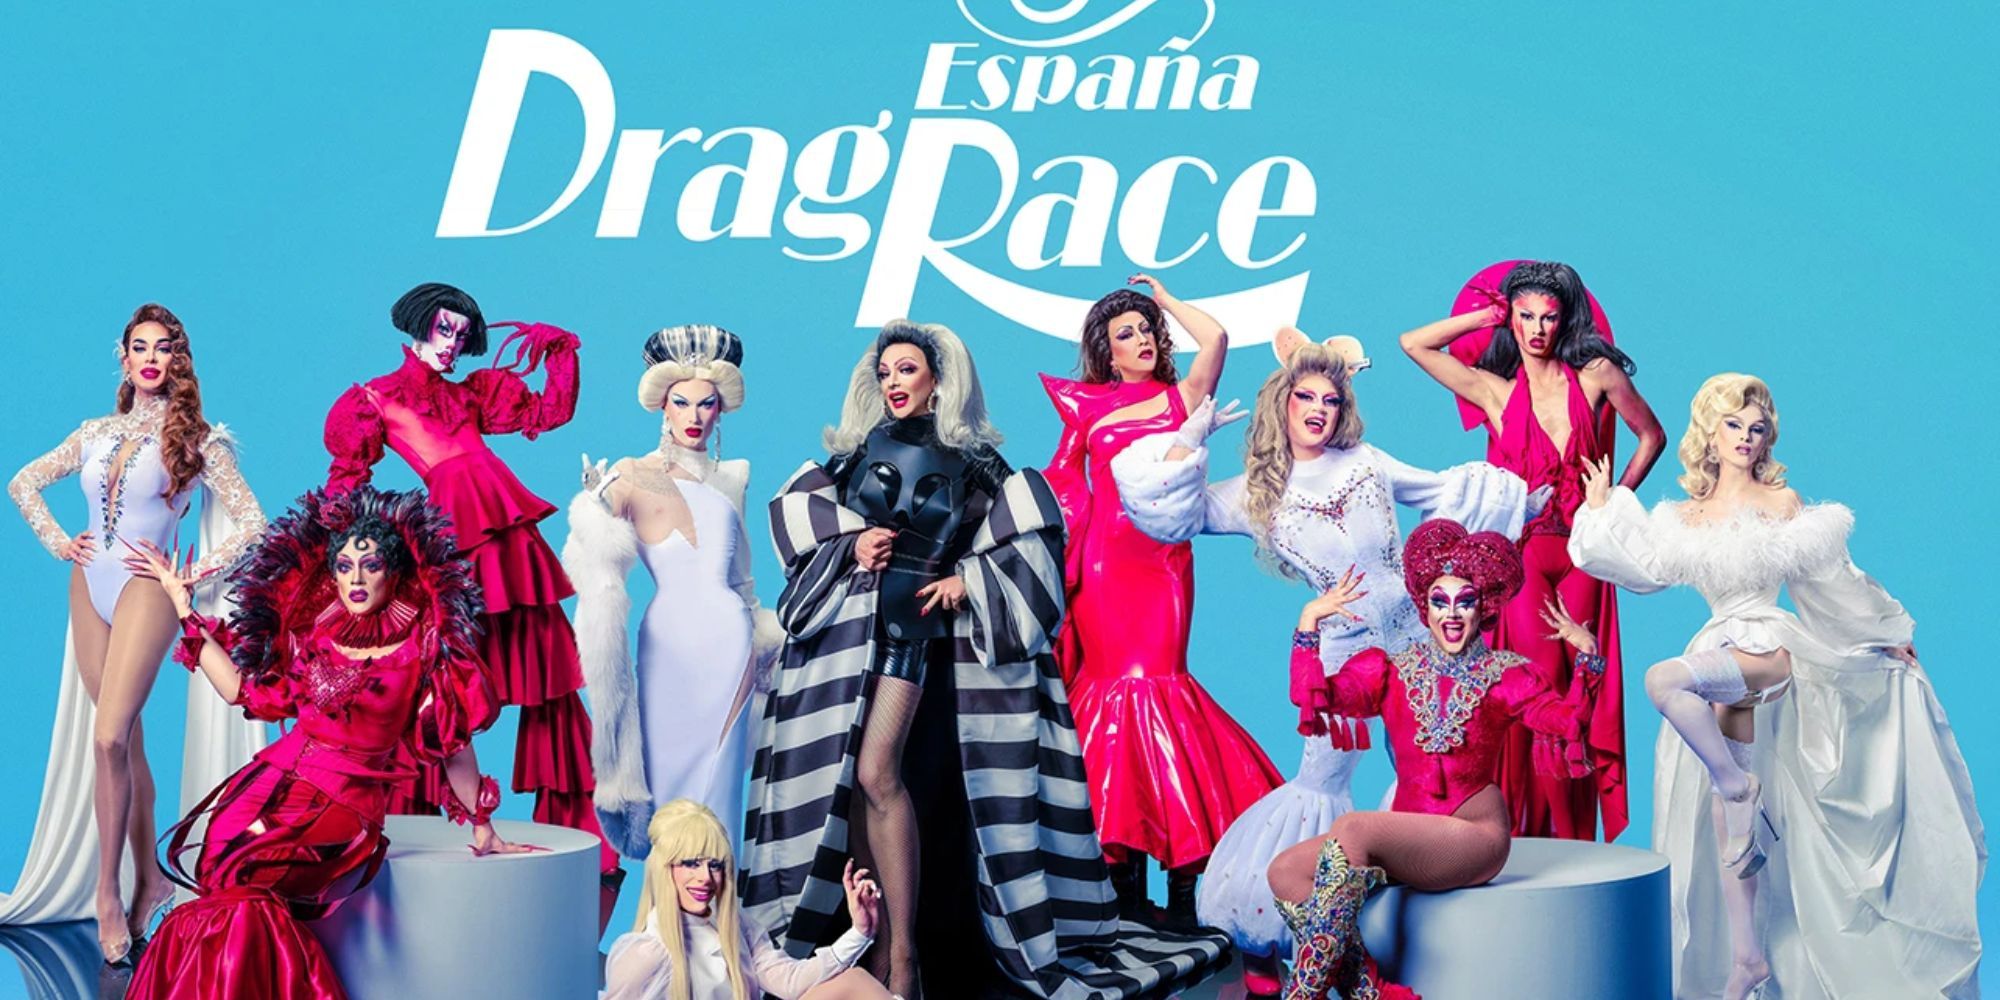 Drag Race Espana Cast